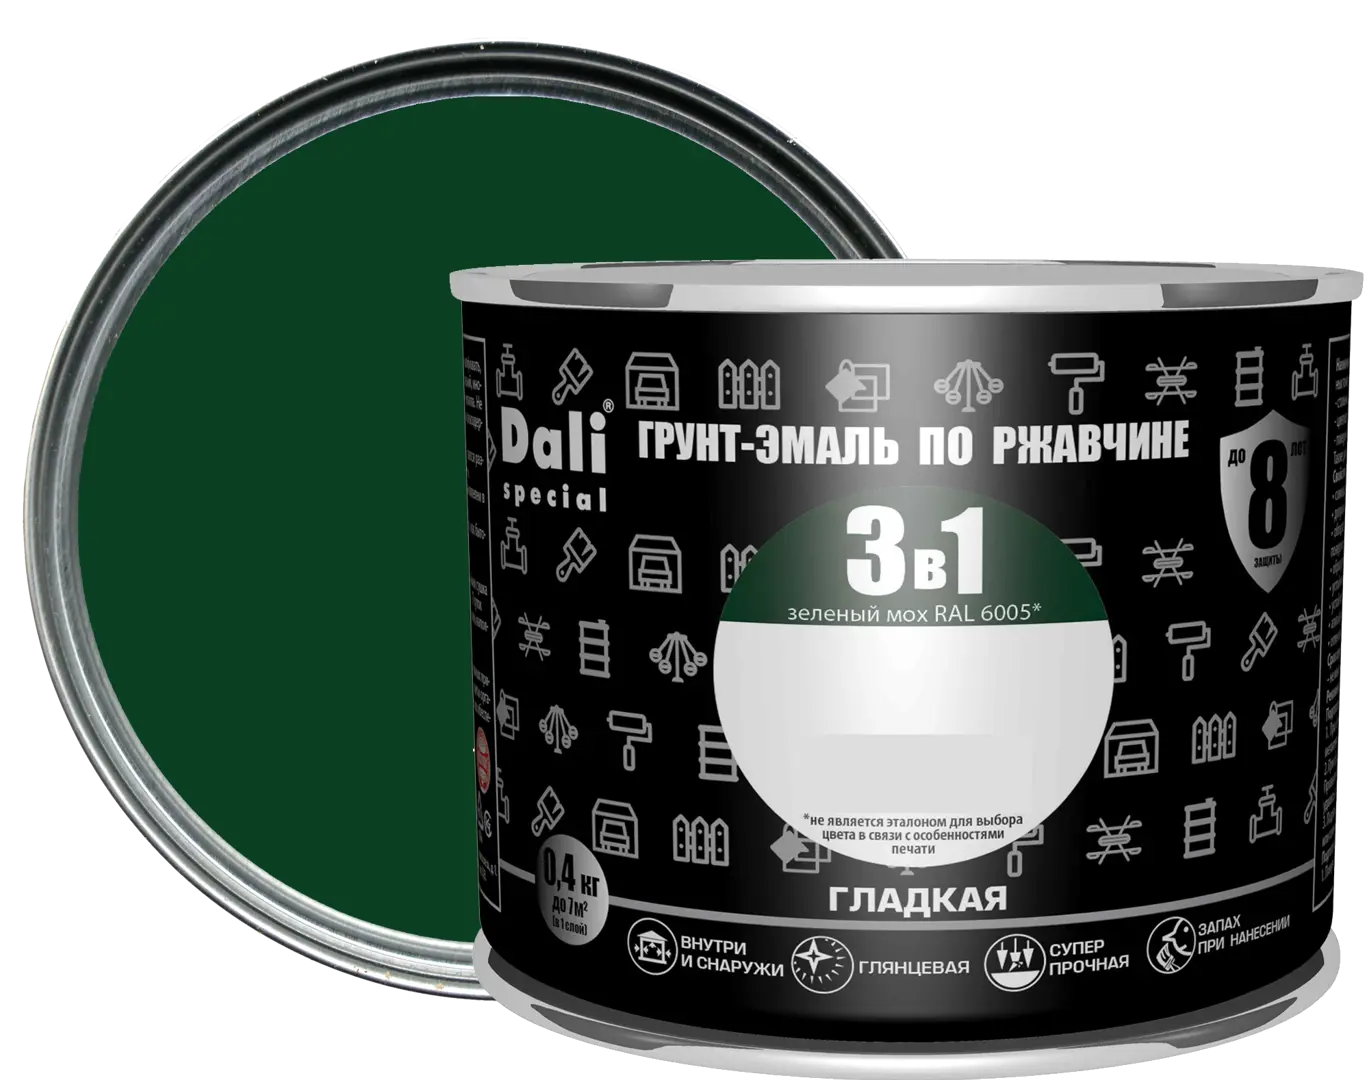 Грунт-эмаль по ржавчине 3 в 1 Dali Special гладкая цвет зелёный мох 0.4 кг RAL 6005 грунт эмаль по ржавчине 3 в 1 profilux гладкая зелёный 0 9 кг